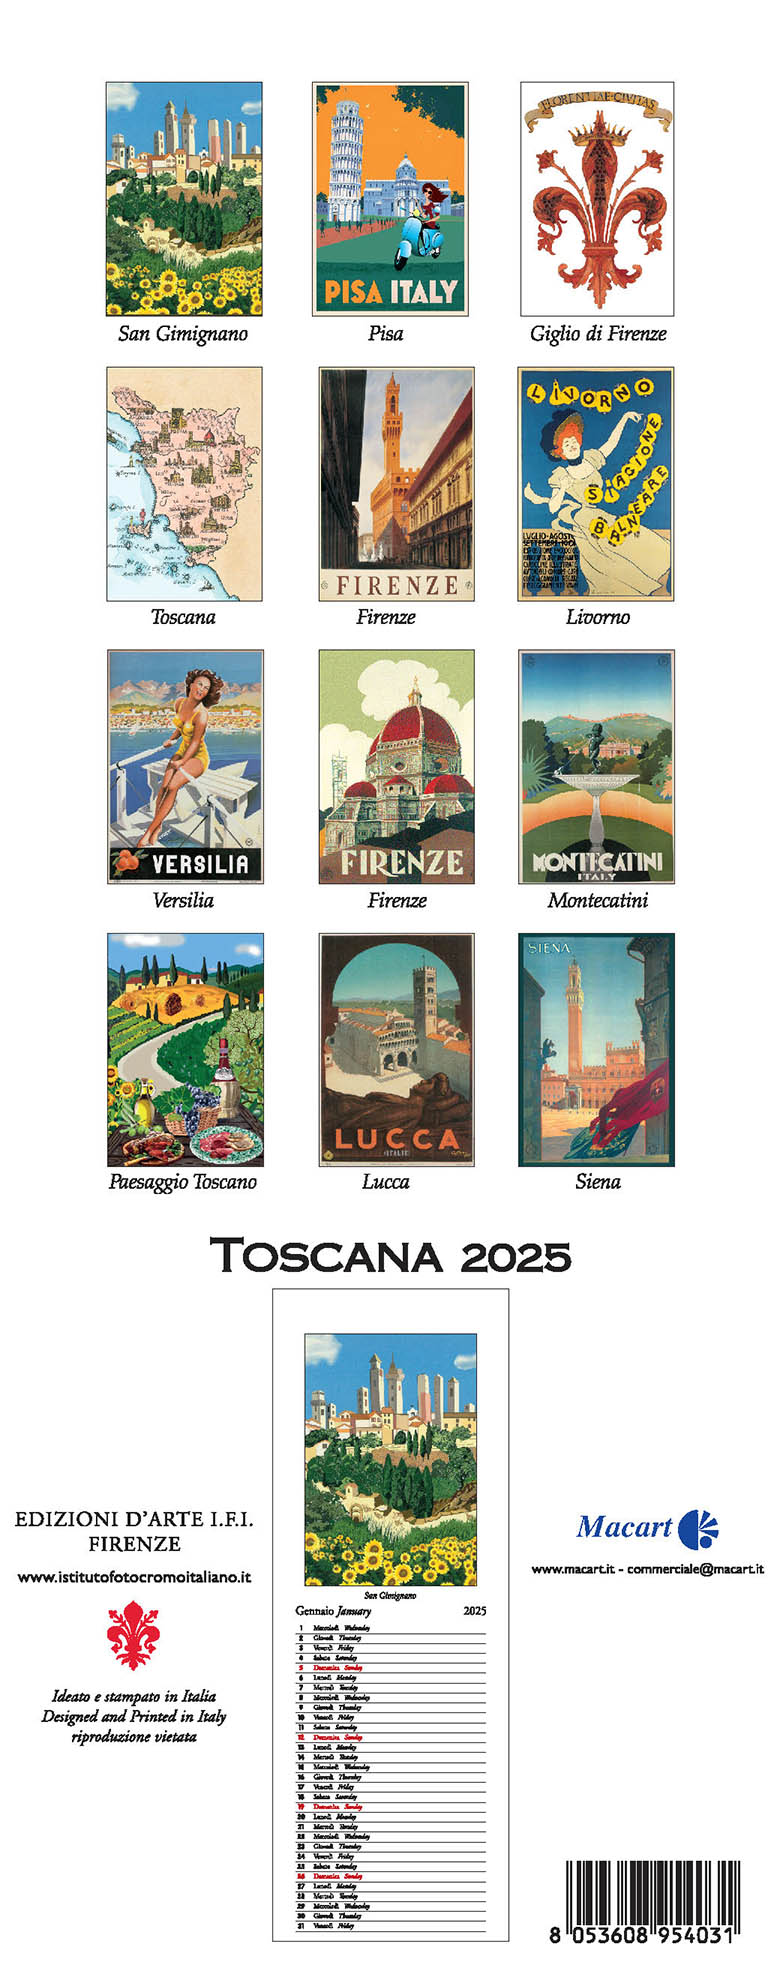 Tuscany 2025 